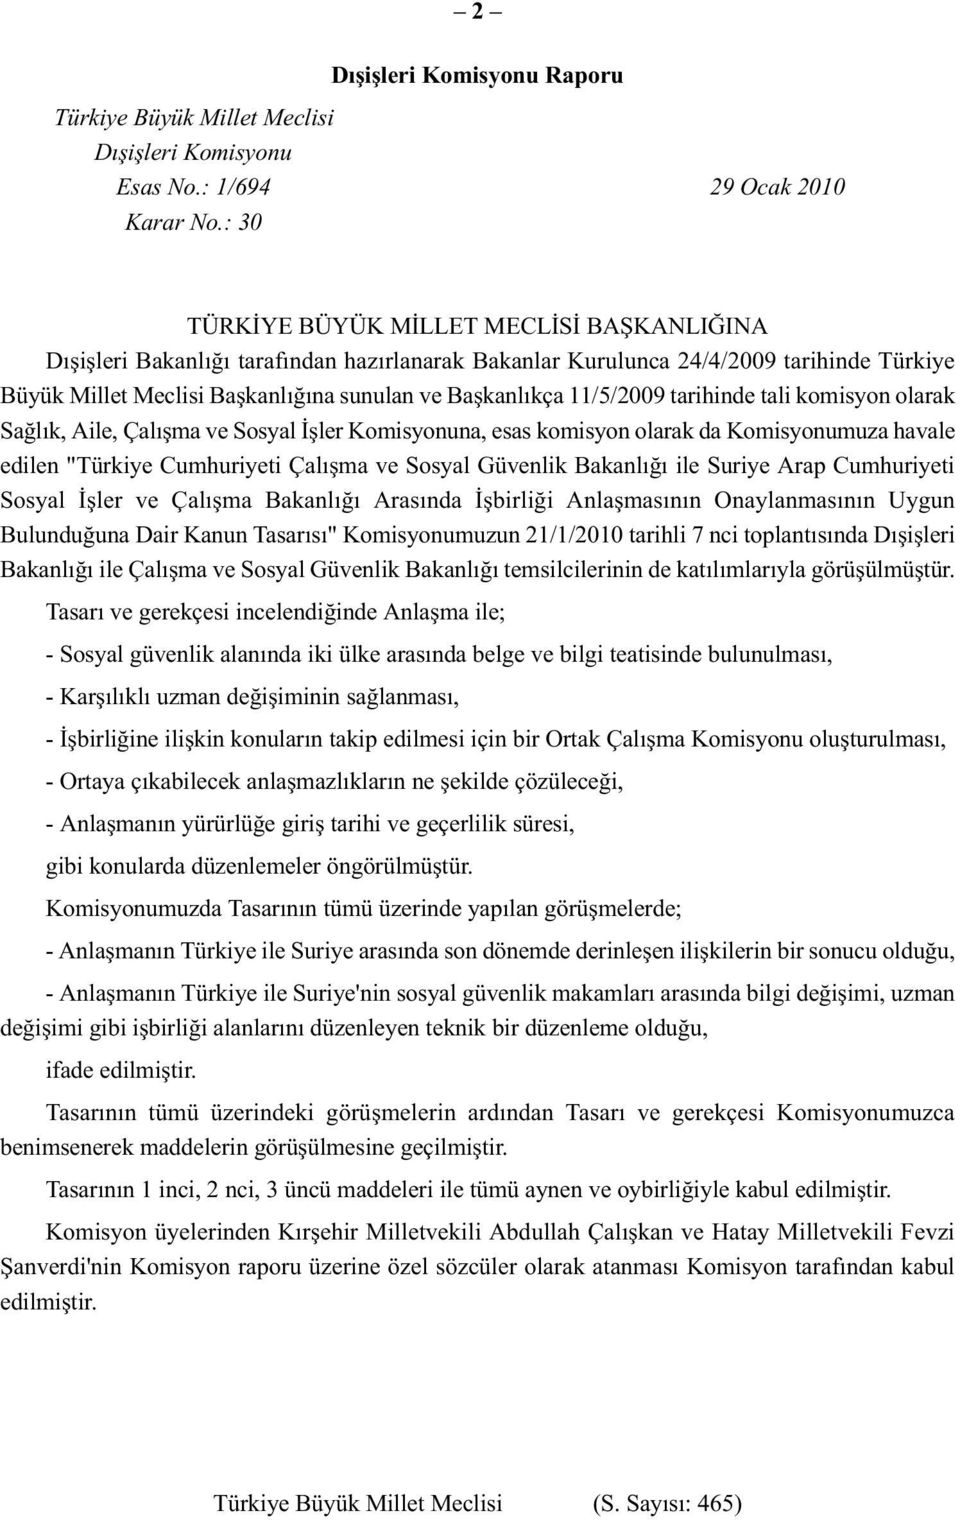 11/5/2009 tarihinde tali komisyon olarak Sağlık, Aile, Çalışma ve Sosyal İşler Komisyonuna, esas komisyon olarak da Komisyonumuza havale edilen "Türkiye Cumhuriyeti Çalışma ve Sosyal Güvenlik